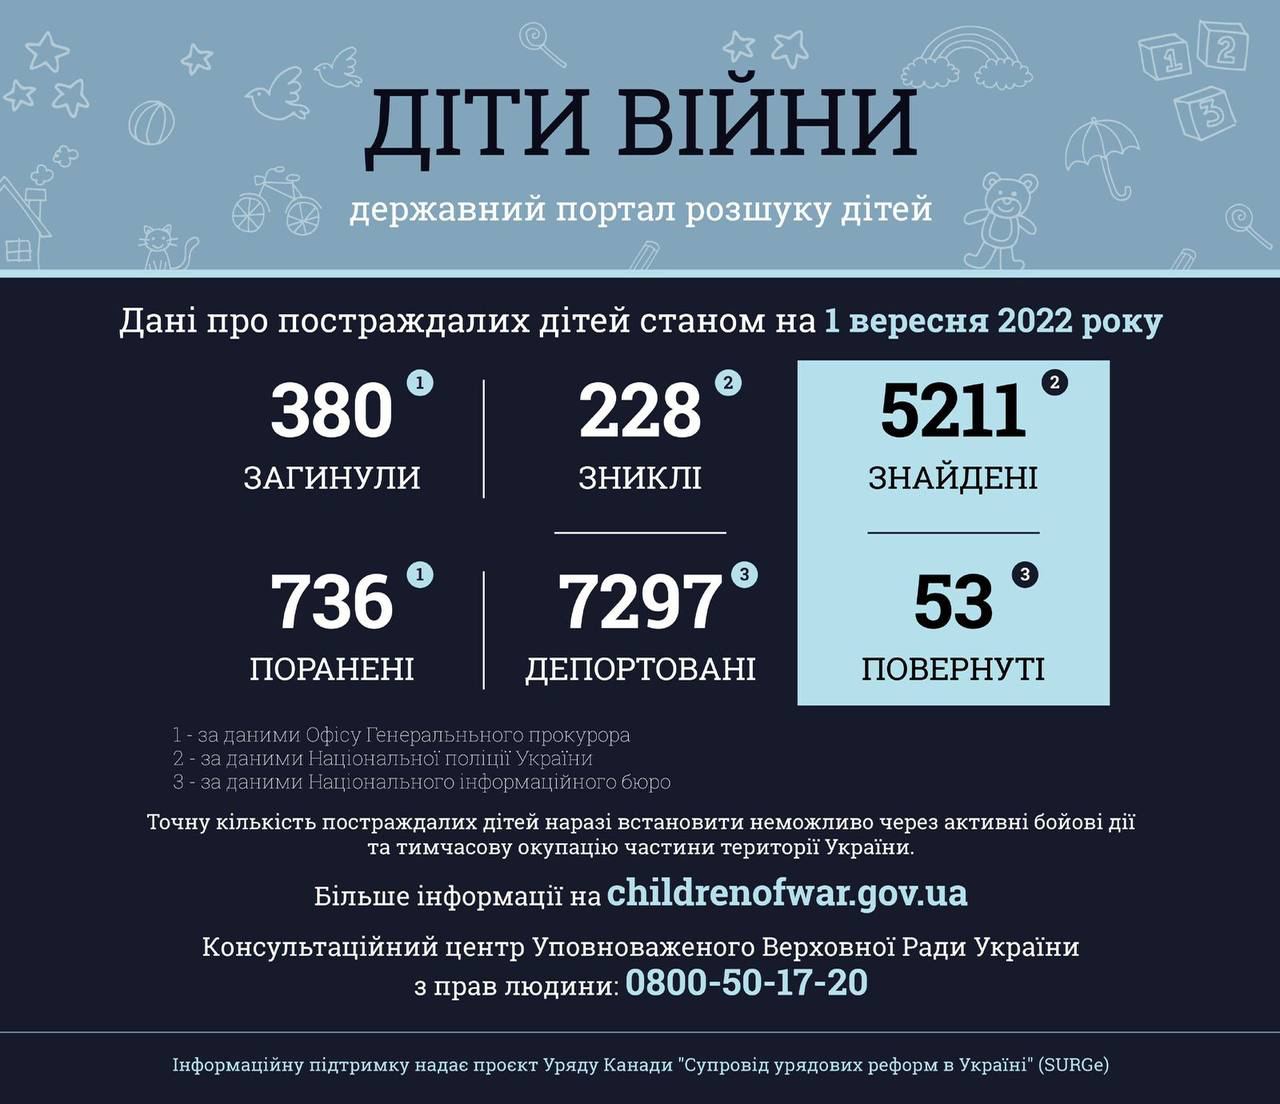 380 детей погибли в результате вооруженной агрессии РФ в Украине, - прокуратура